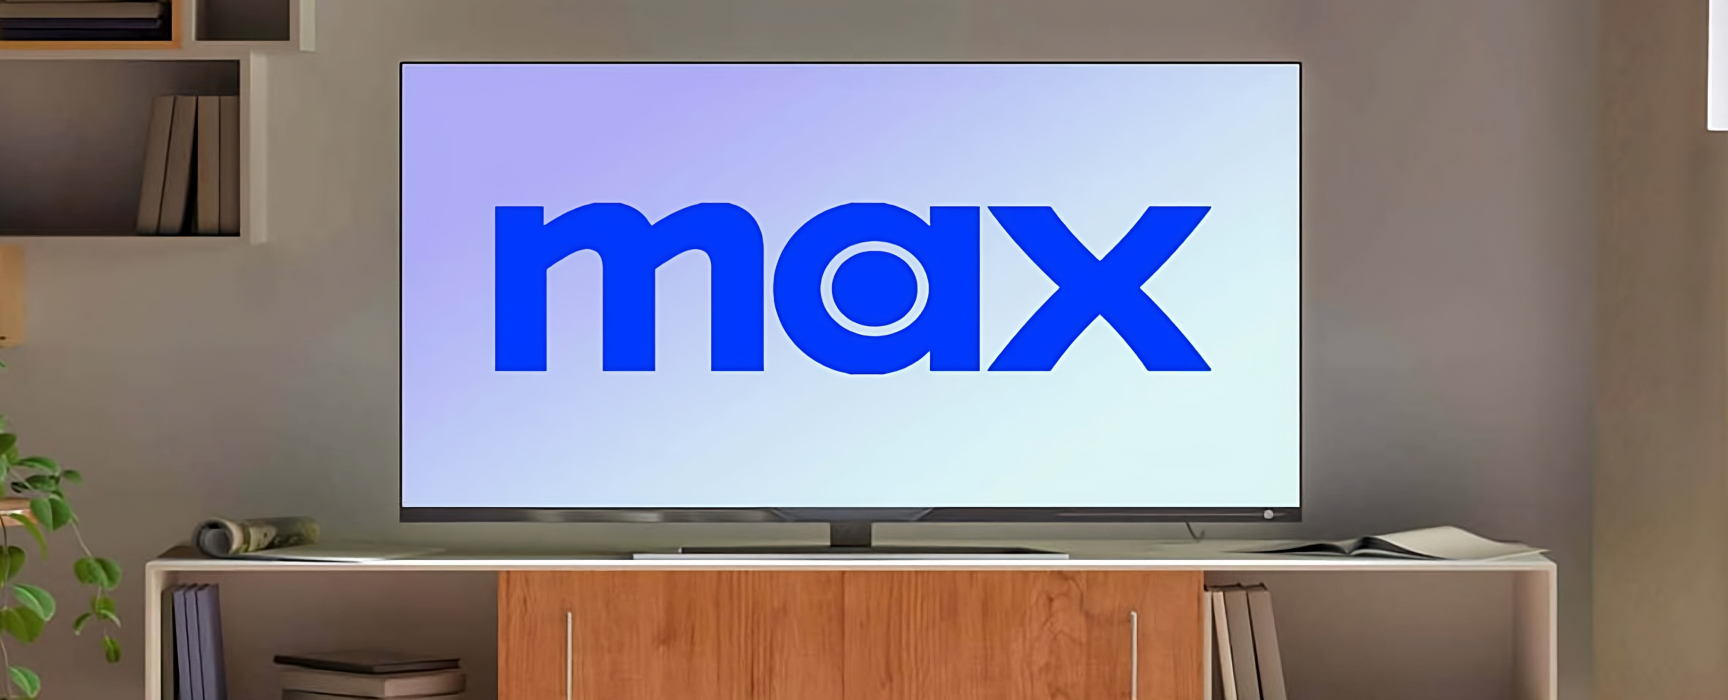 HBO Max cambia a Max ¿Qué implica este cambio?